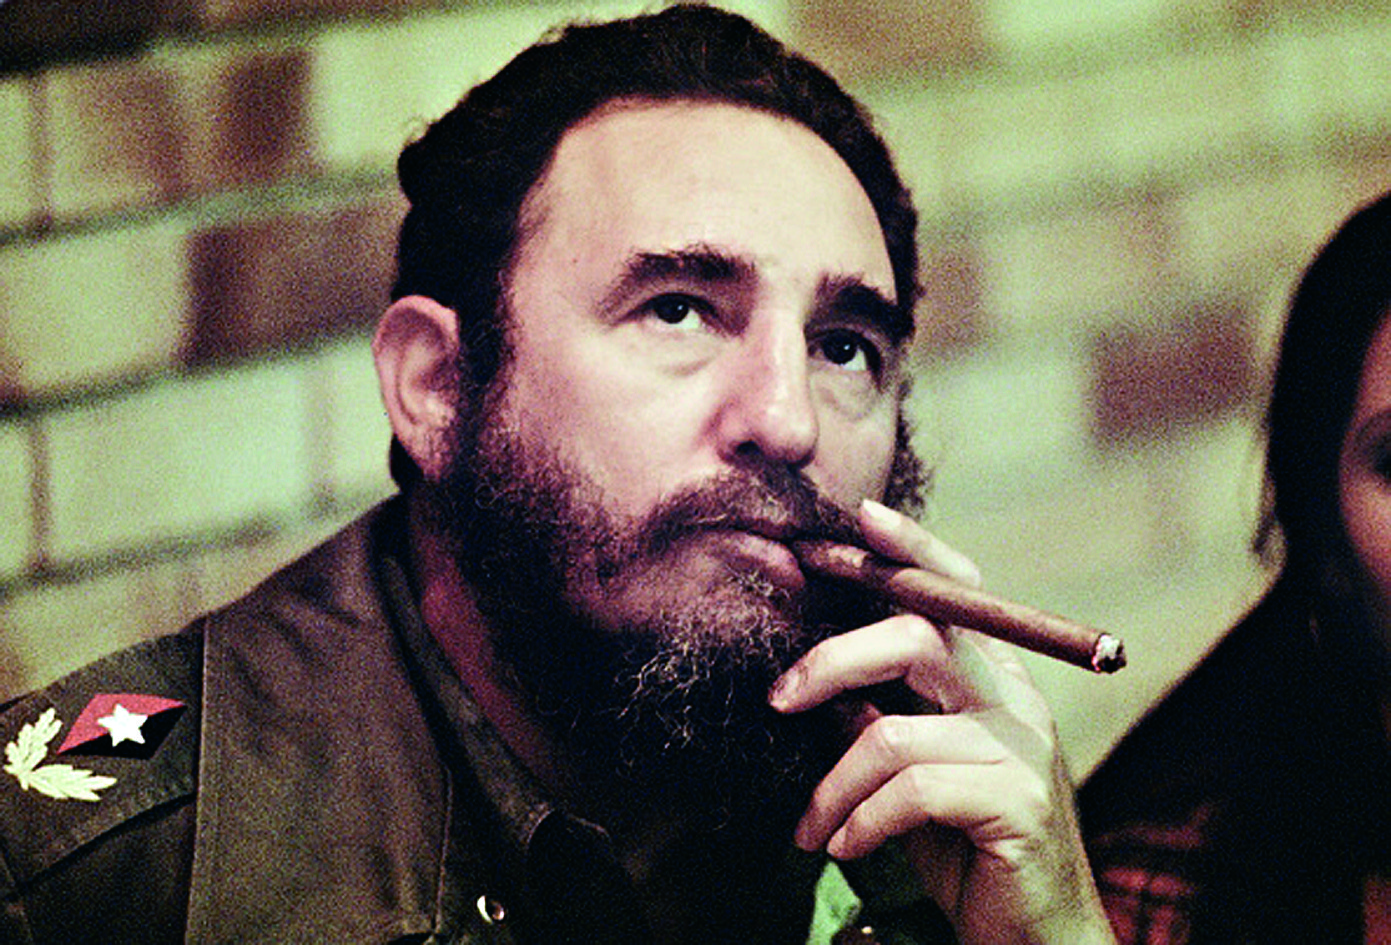 Fidel Castro cigar 653916161.jpg